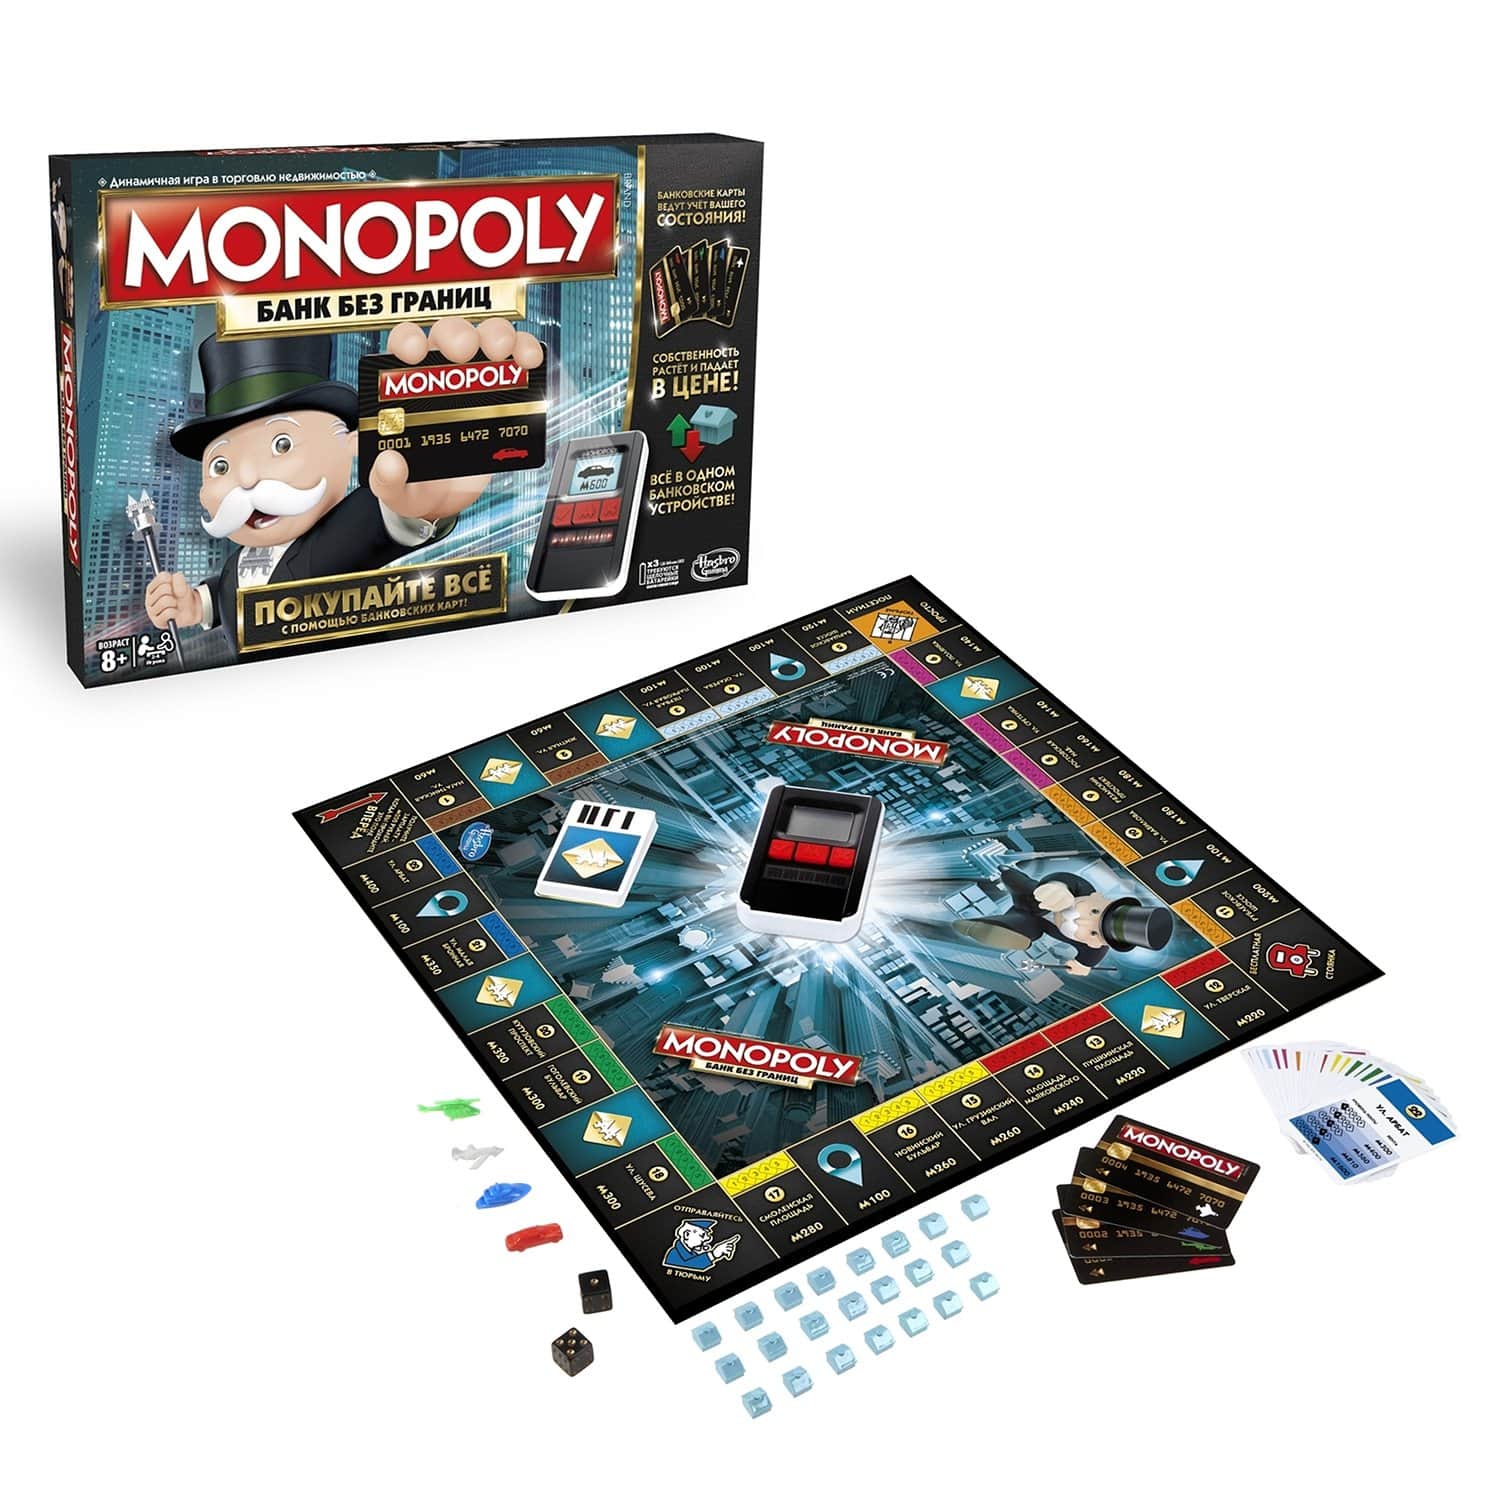 Игра настольная Monopoly с банковскими картами B6677